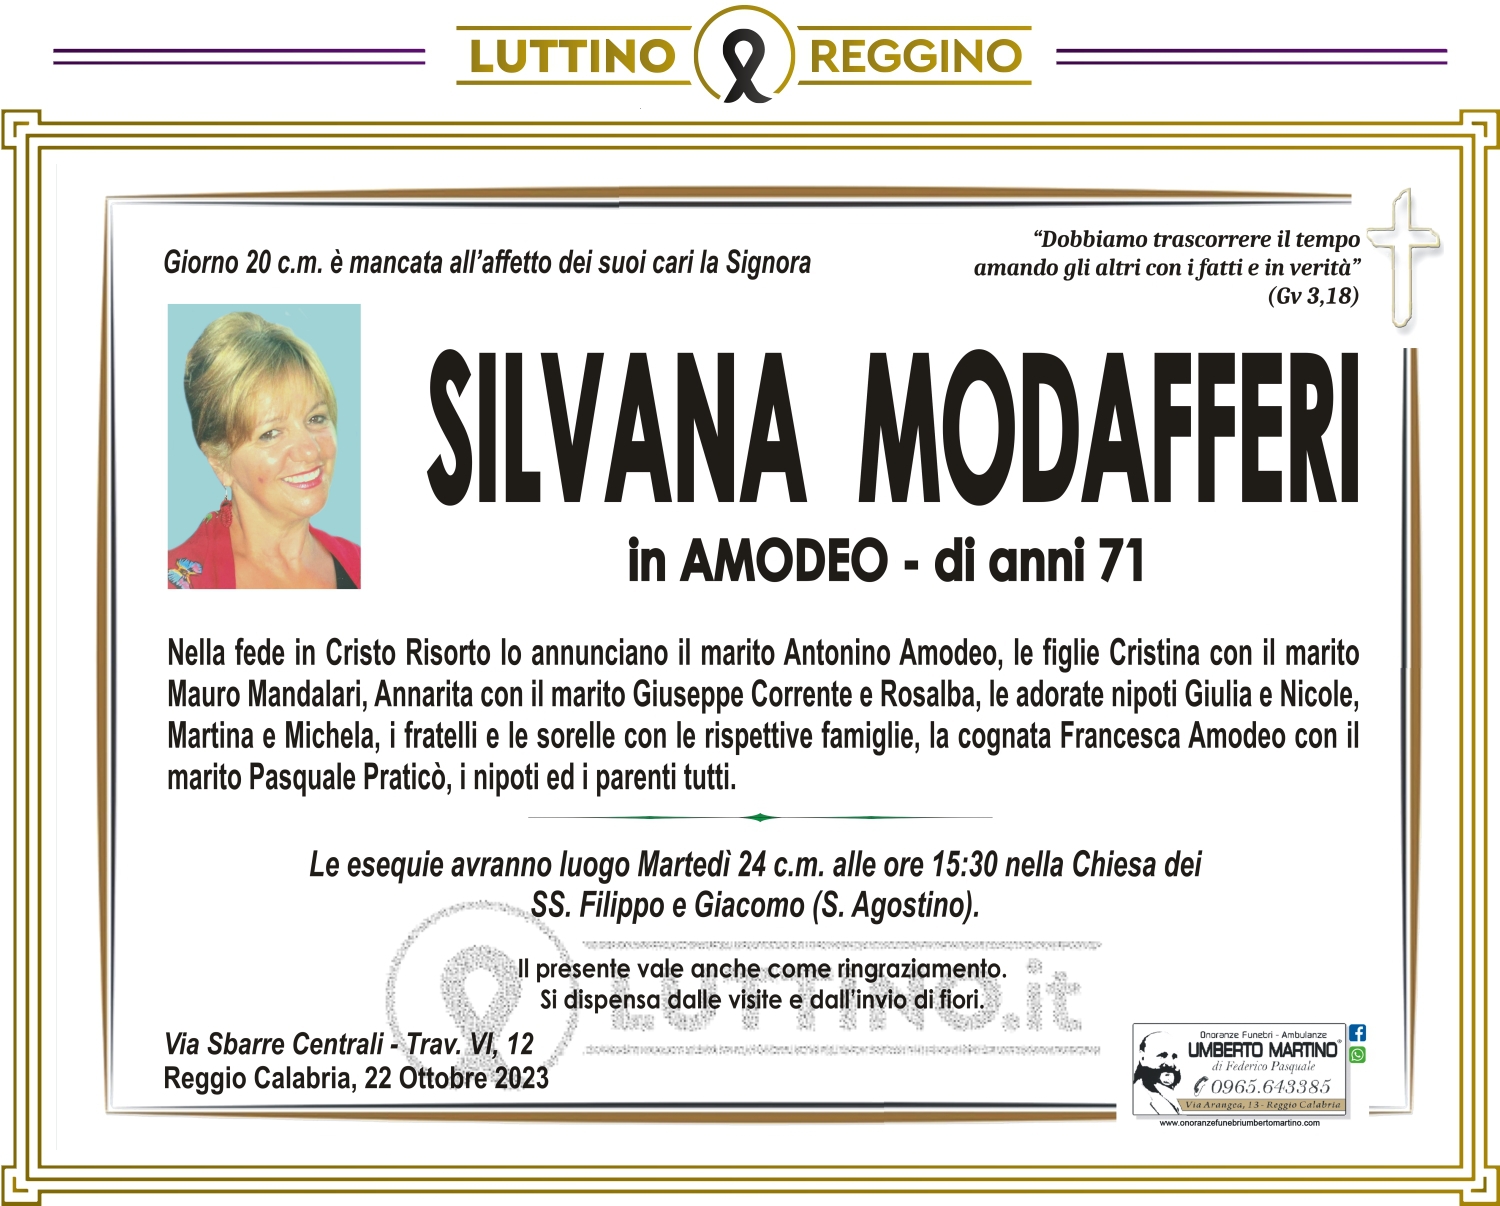 Silvana Modafferi